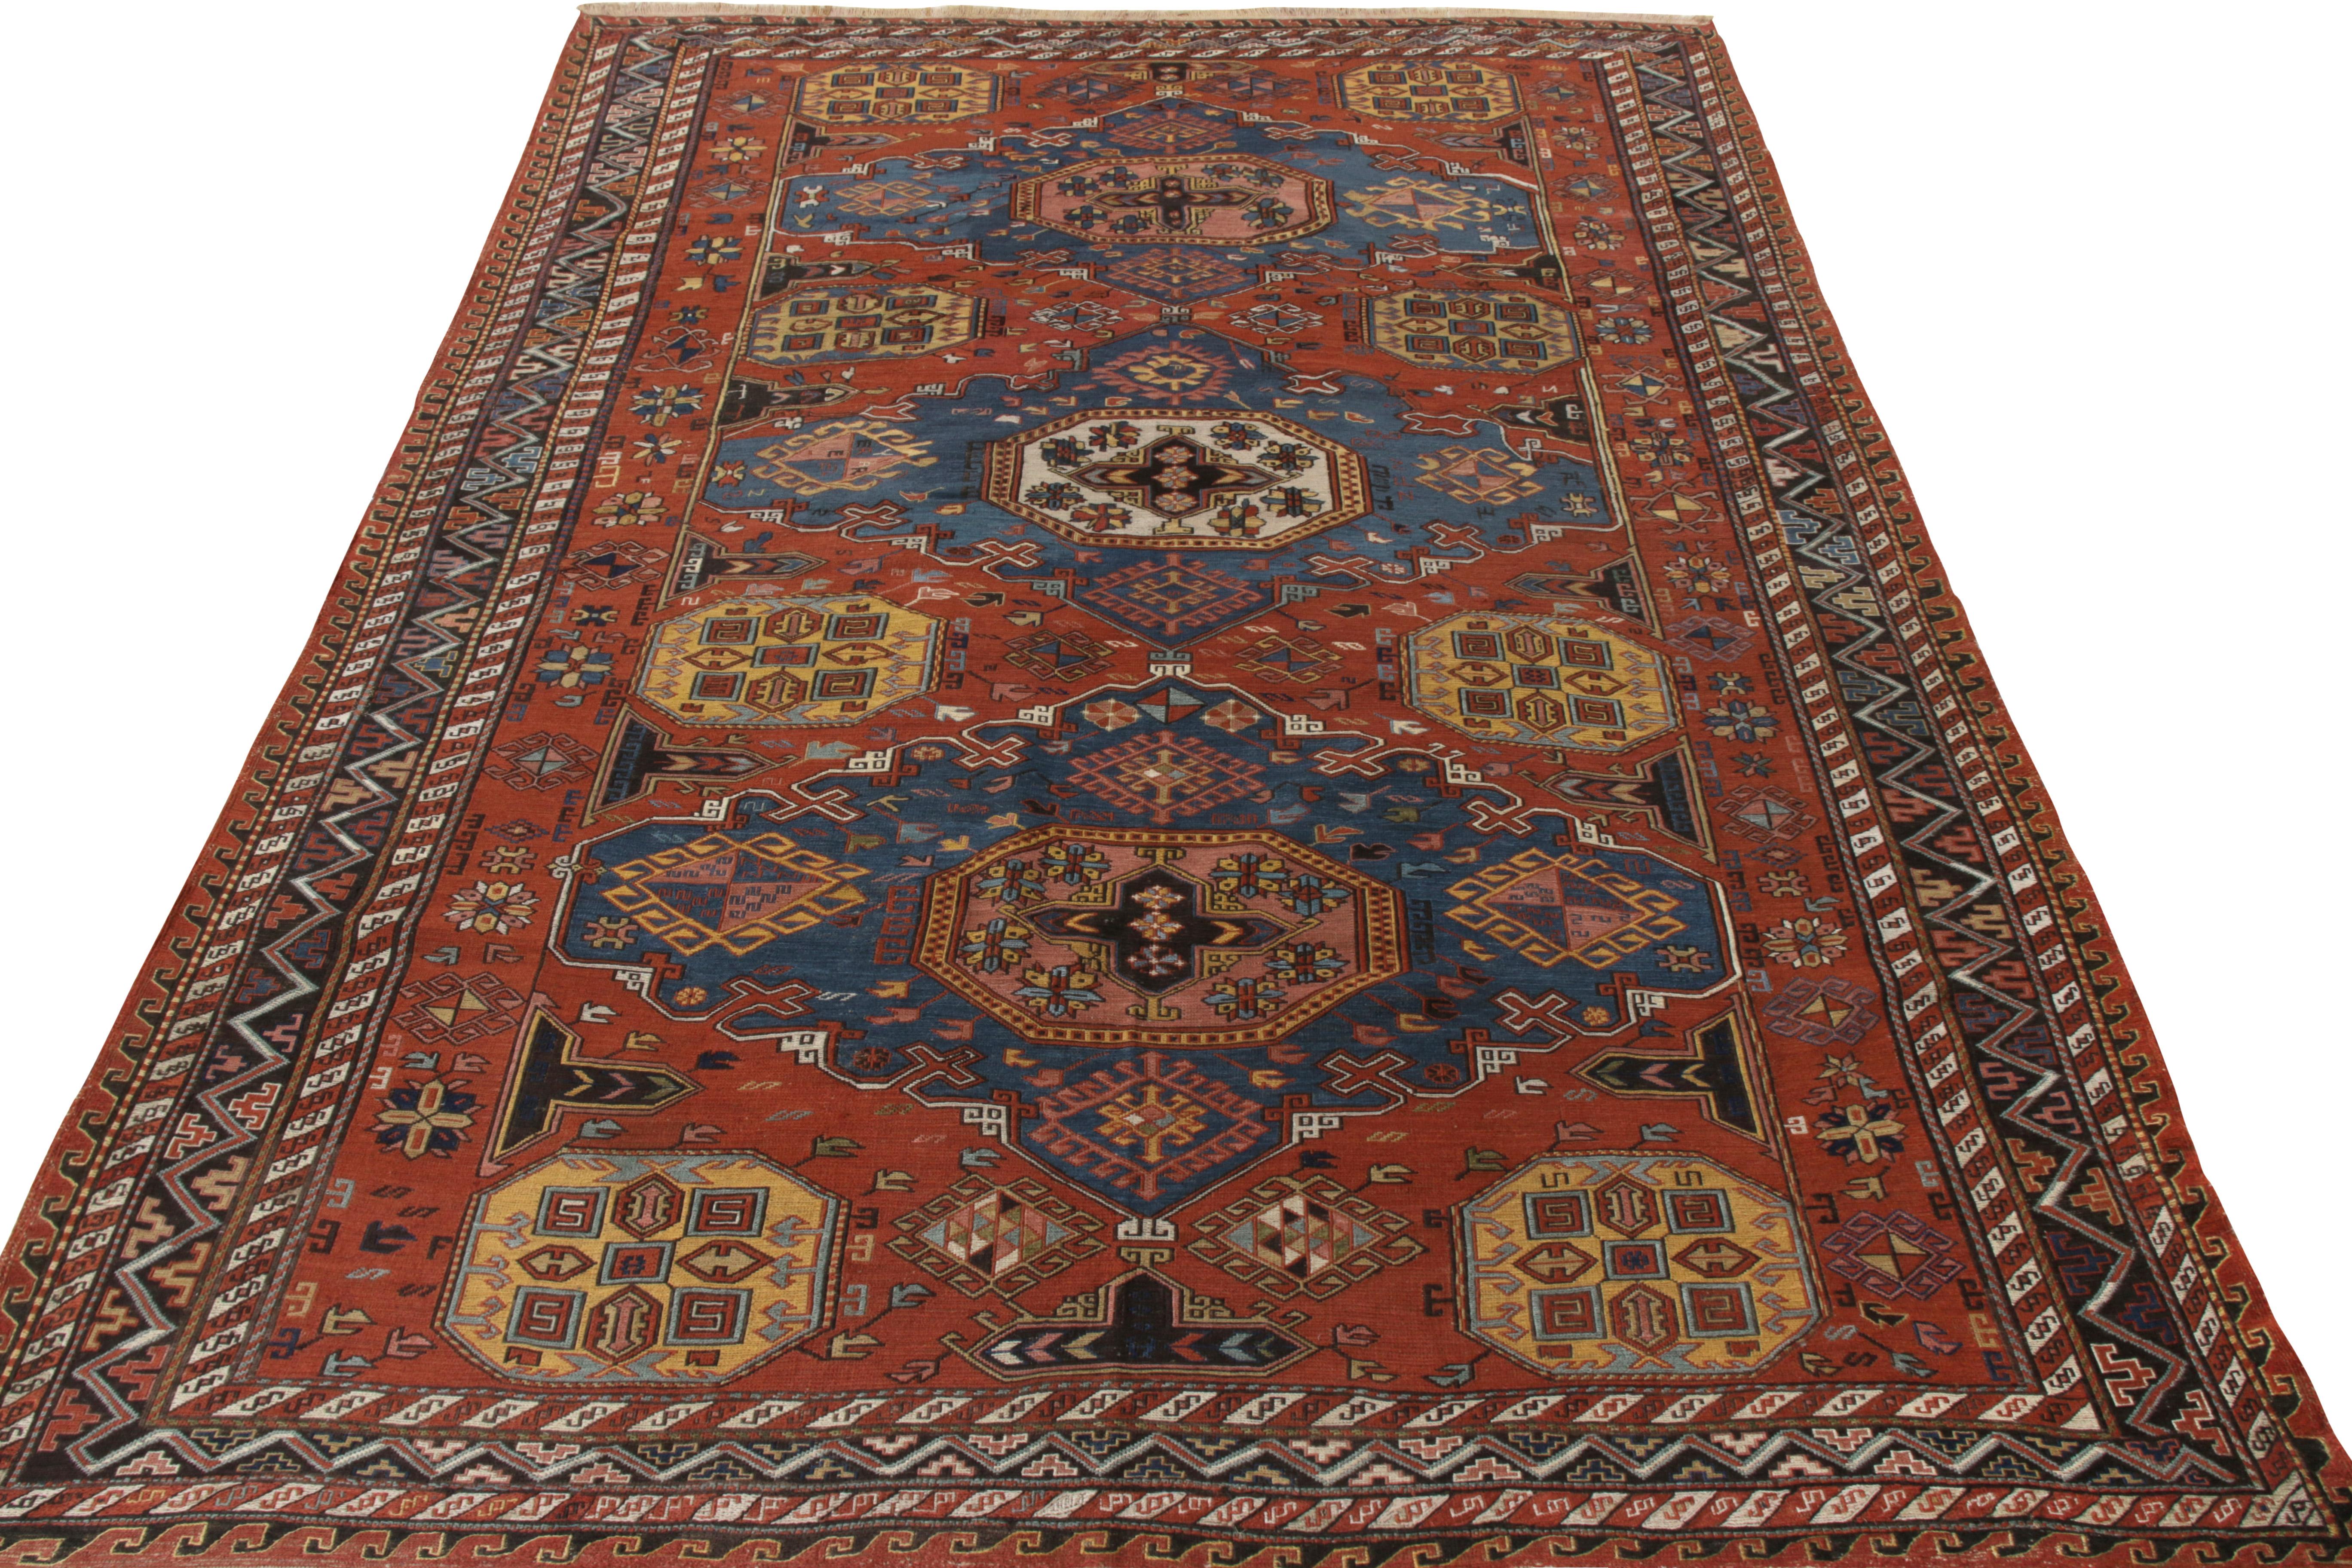 Handgeknüpft aus Wolle, ein antiker 7 x 9 Soumak-Teppich aus Russland, ca. 1920-1930. Das Stück, das in die Antique & Vintage-Kollektion von Rug & Kilim aufgenommen wurde, zeigt eine reiche Farbpalette mit satten Blau- und Rosttönen, die harmonisch